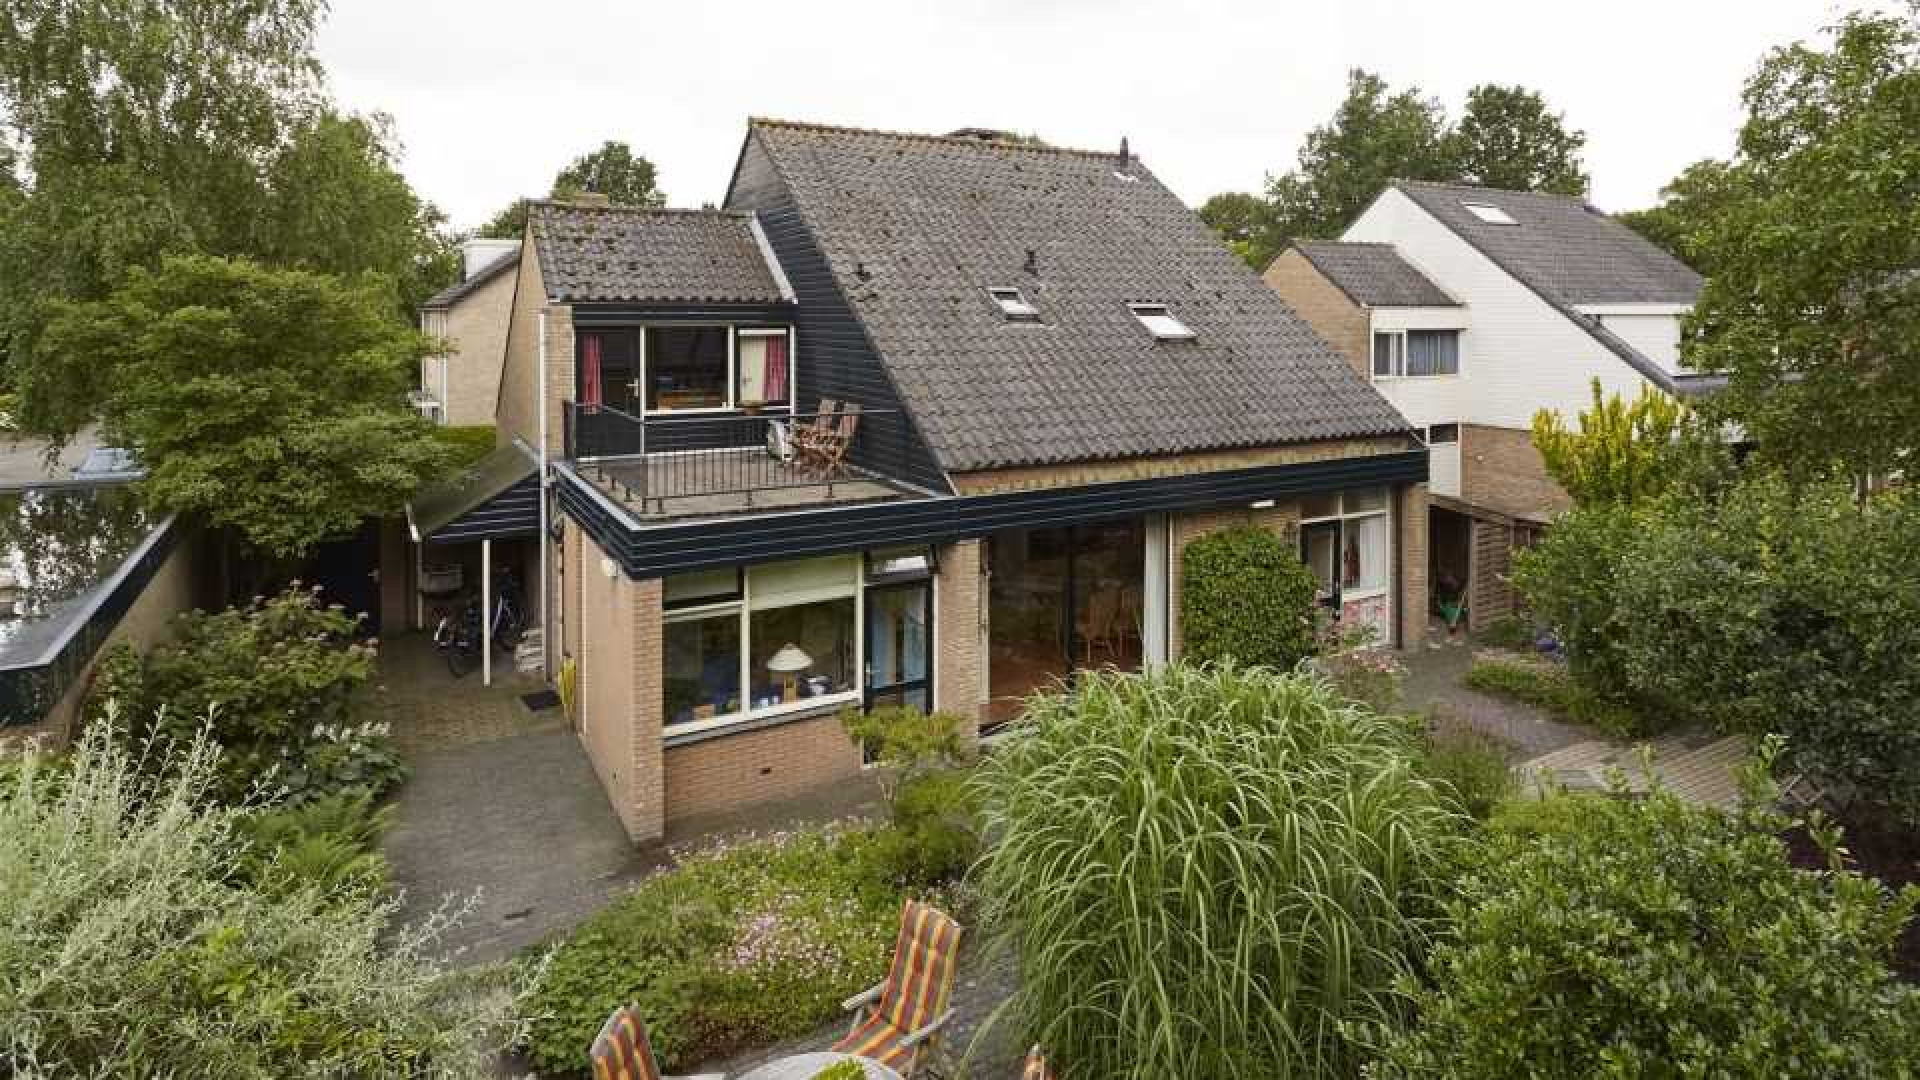 Voormalig NOS Journaal presentator Gijs Wanders zet zijn familiehuis te koop. Zie foto's 19